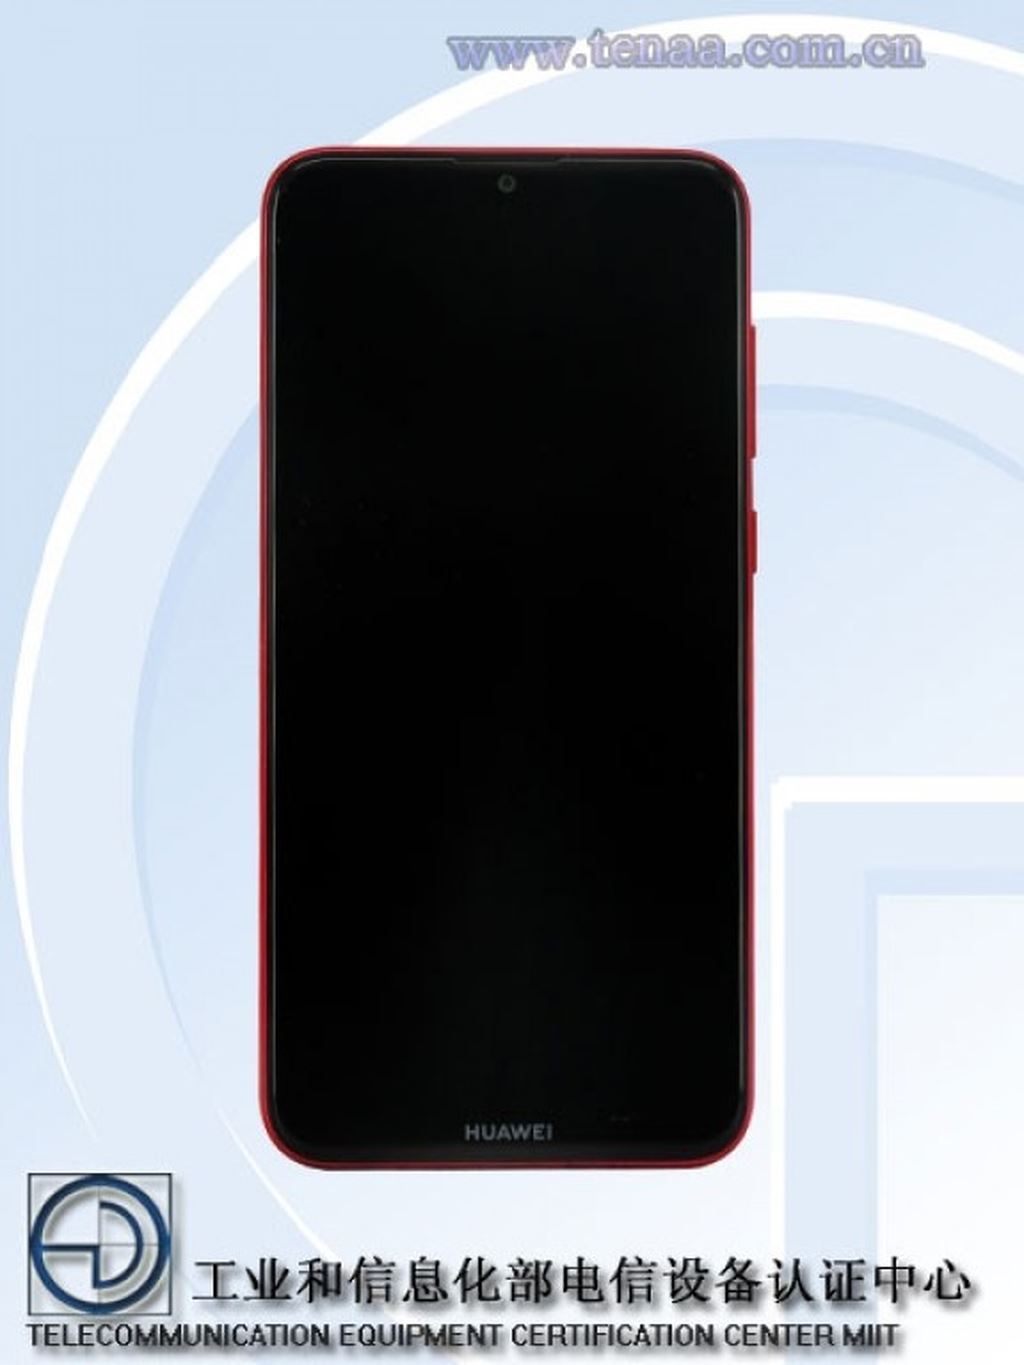 Huawei Enjoy 9 xuất hiện trên cơ sỡ dữ liệu của TENAA ảnh 1